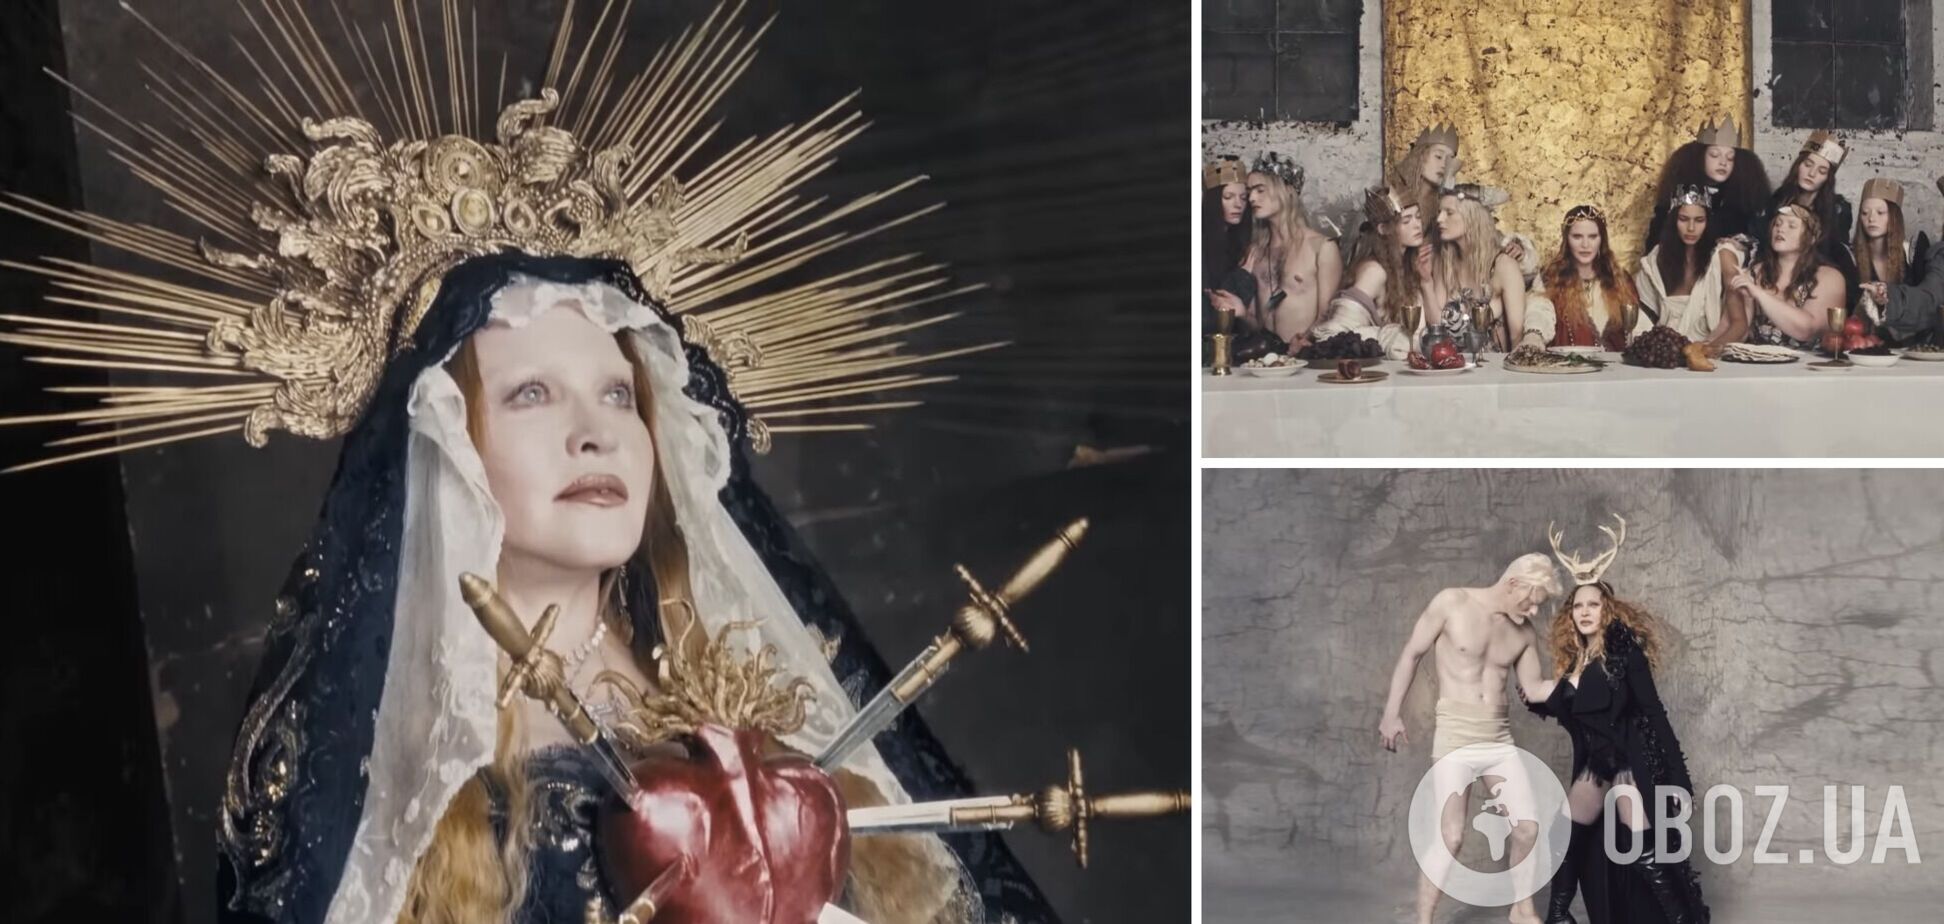 Мадонна випустила власний музичний фільм, у якому з'явилася в образах Ісуса, Діви Марії та демона. Відео